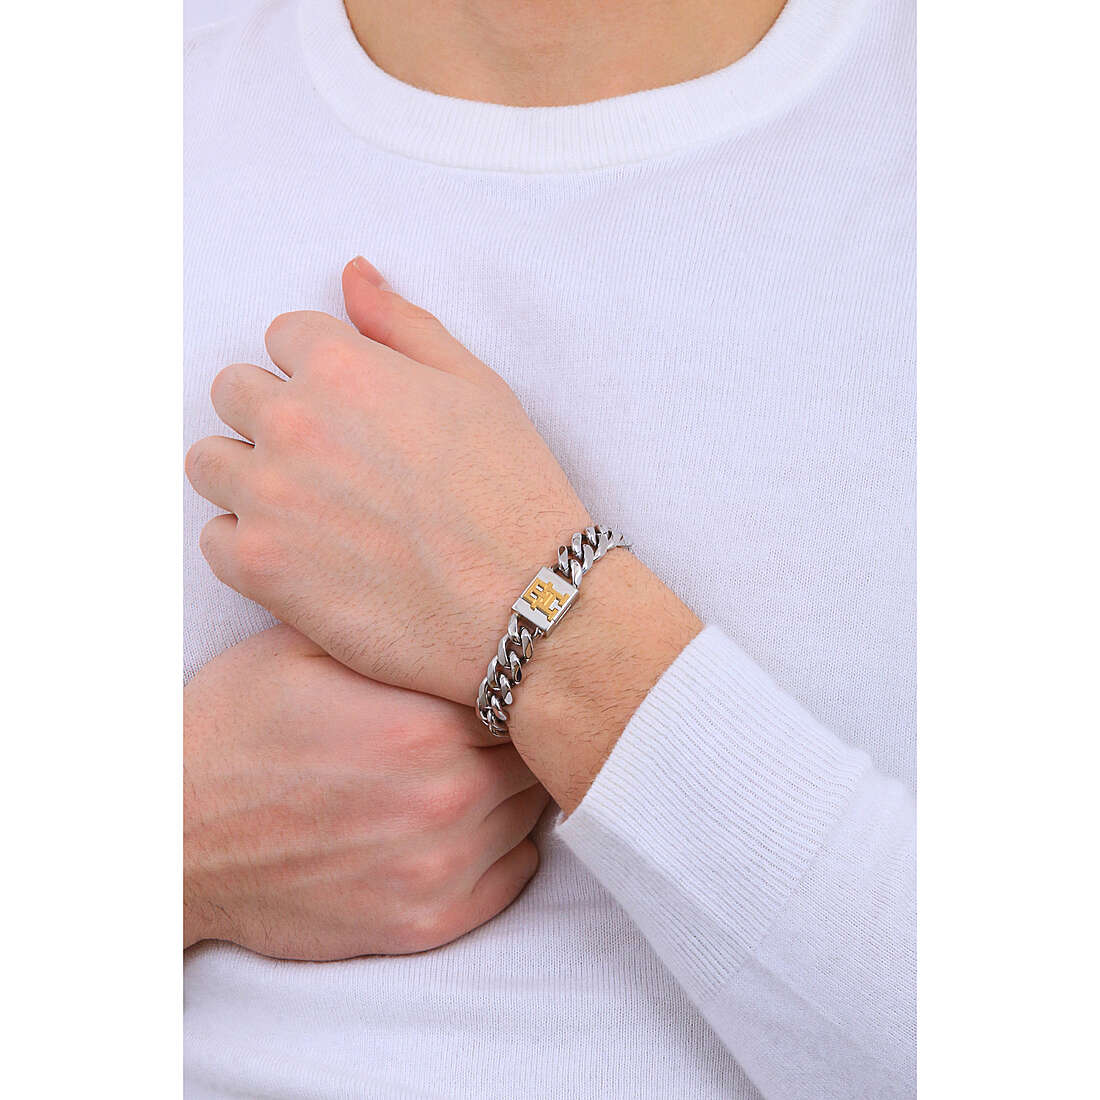 Tommy Hilfiger bracelets Monogram man 2790463 wearing